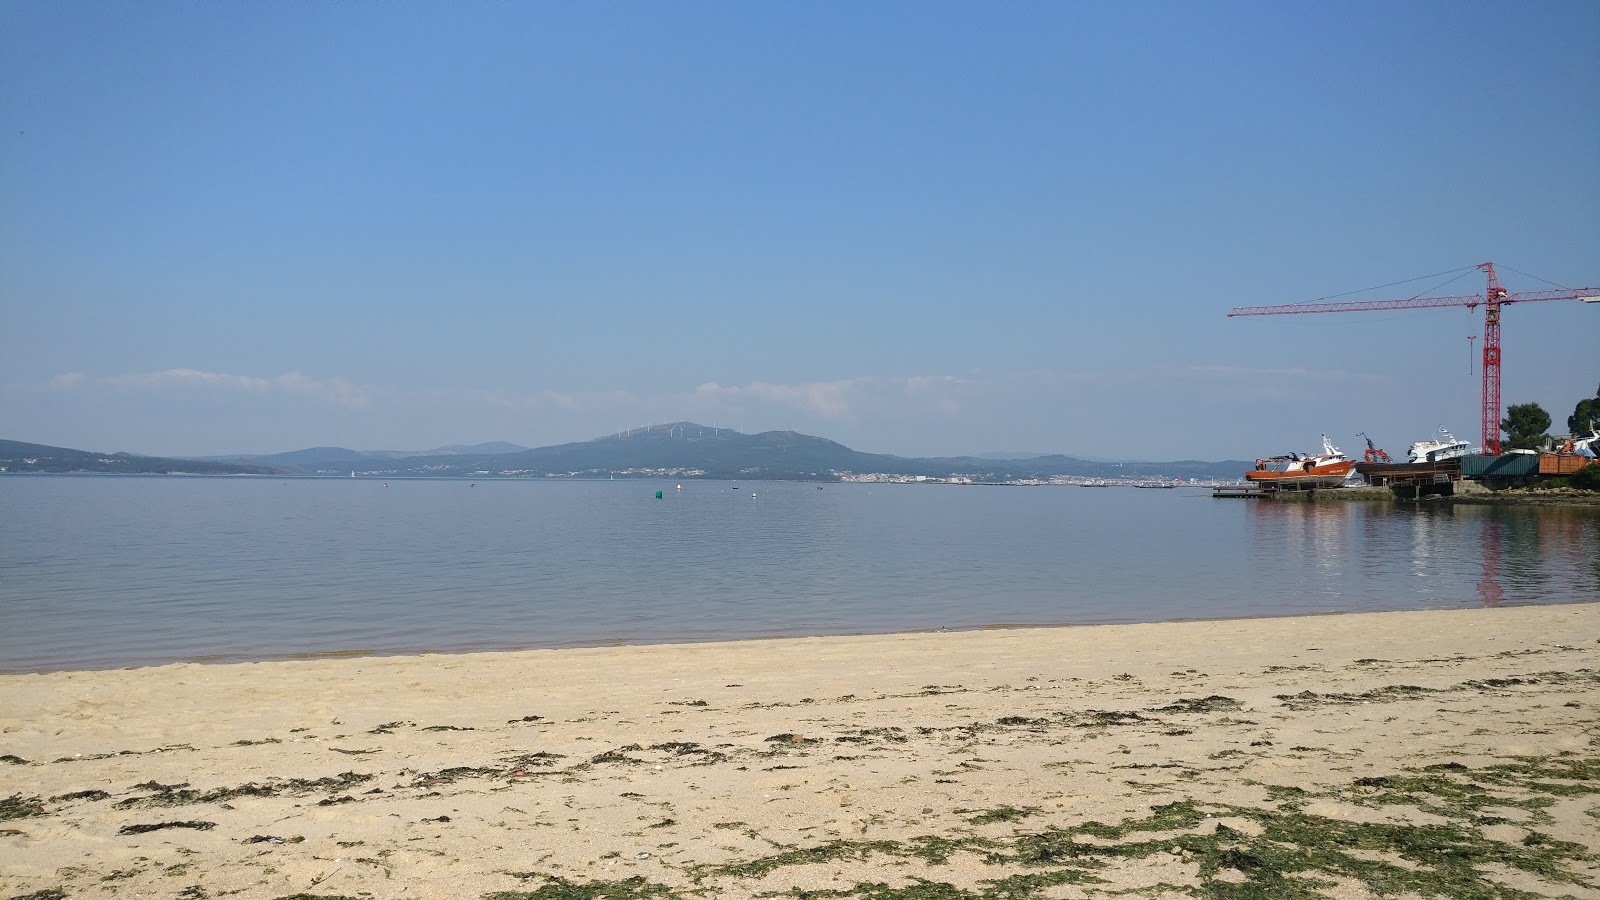 Ladeira beach'in fotoğrafı açık yeşil su yüzey ile